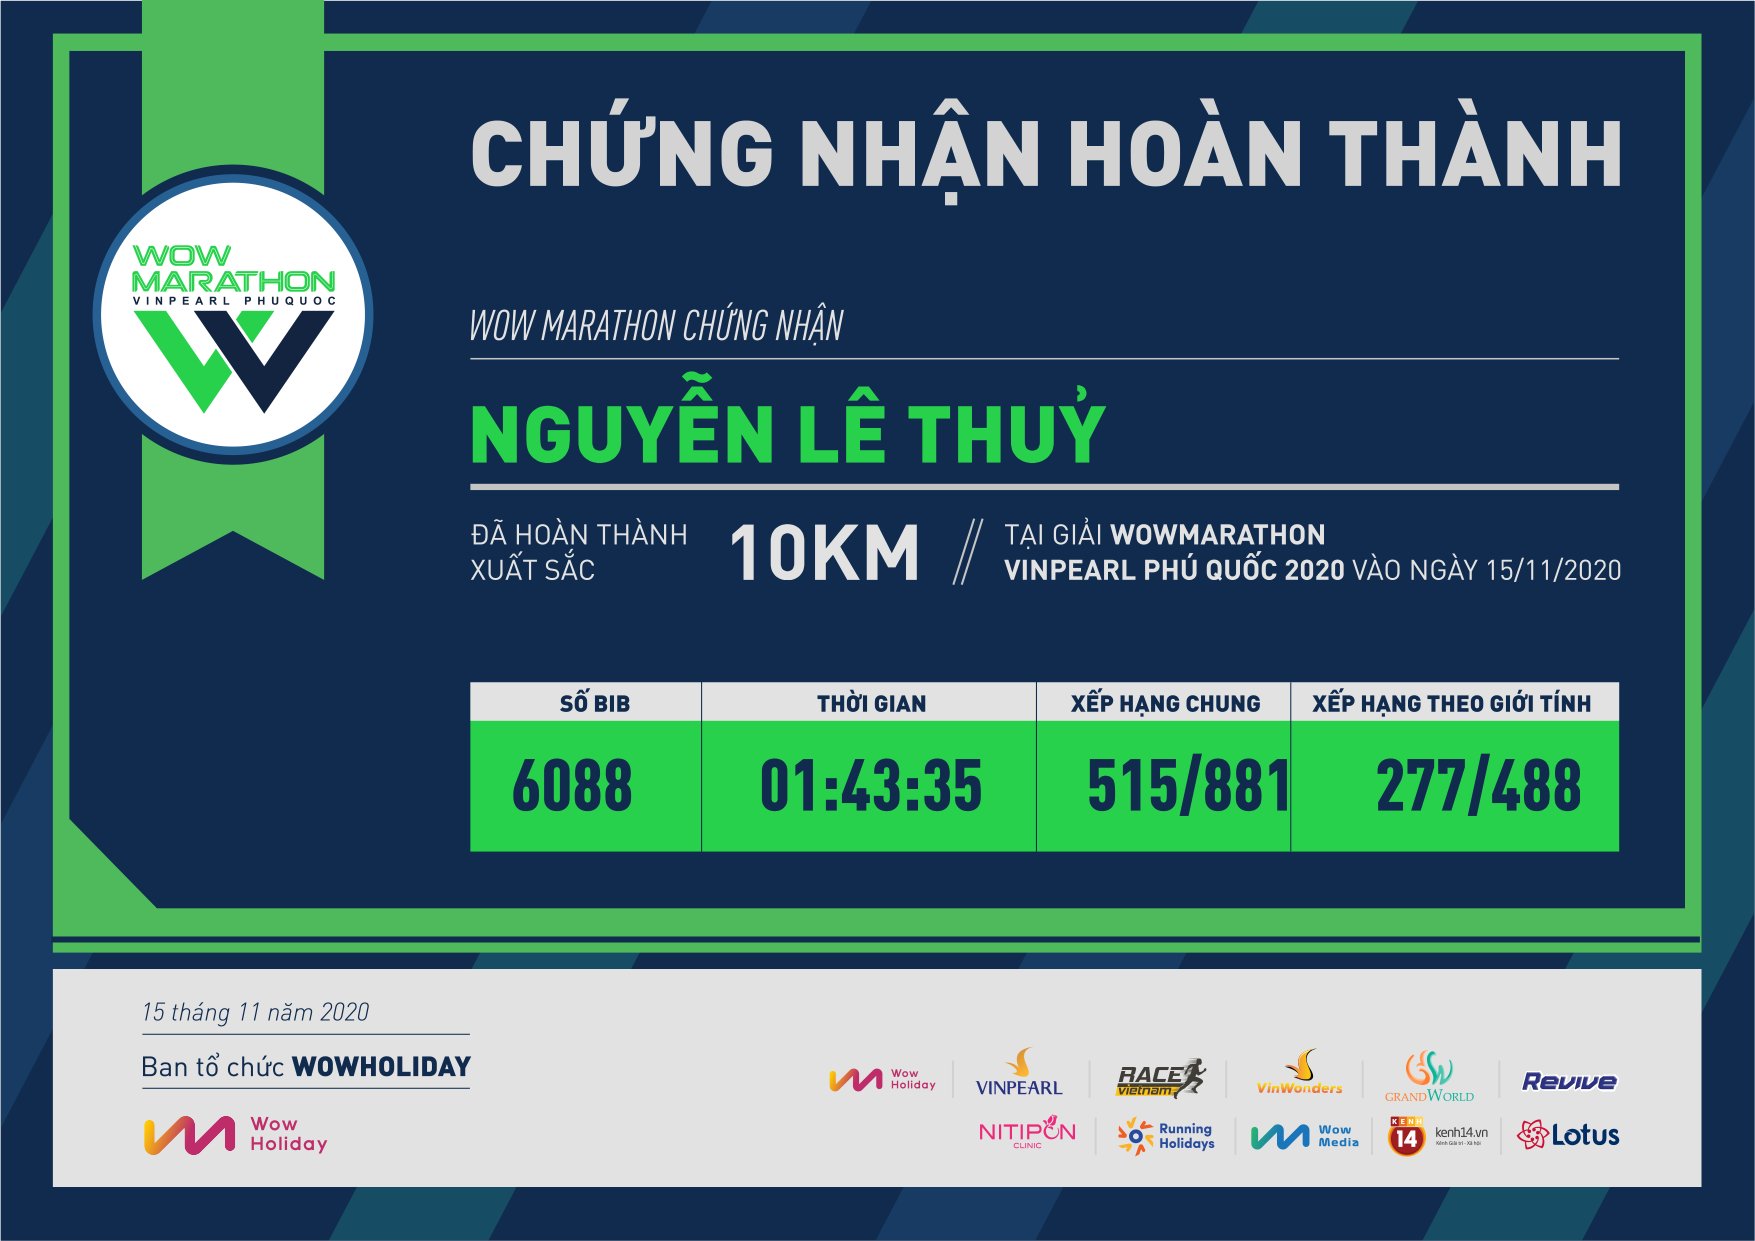 6088 - Nguyễn Lê Thuỷ